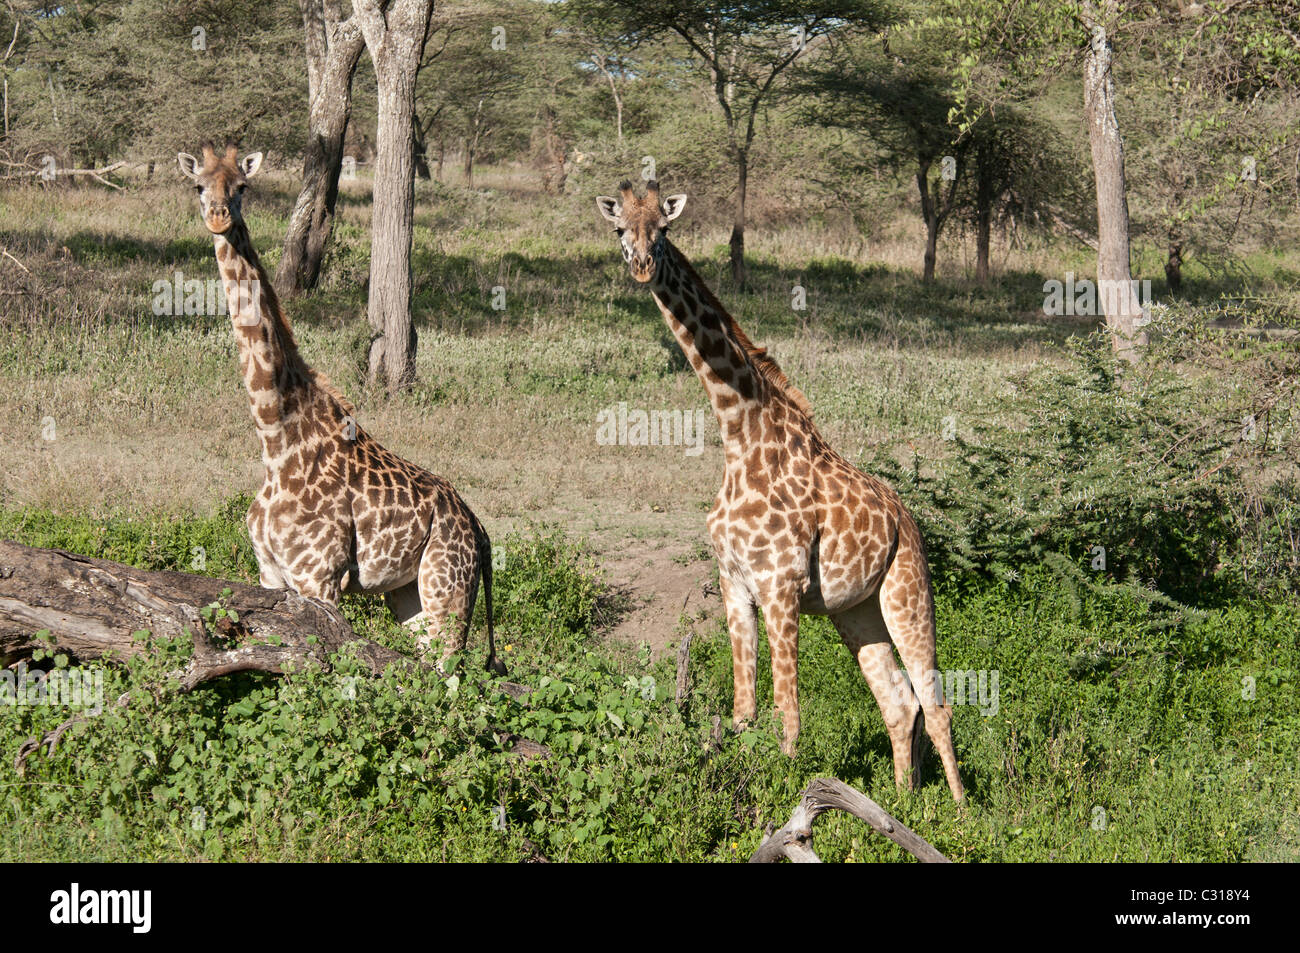 Stock foto de dos jirafas masai por un registro permanente en los bosques de Ndutu. Foto de stock